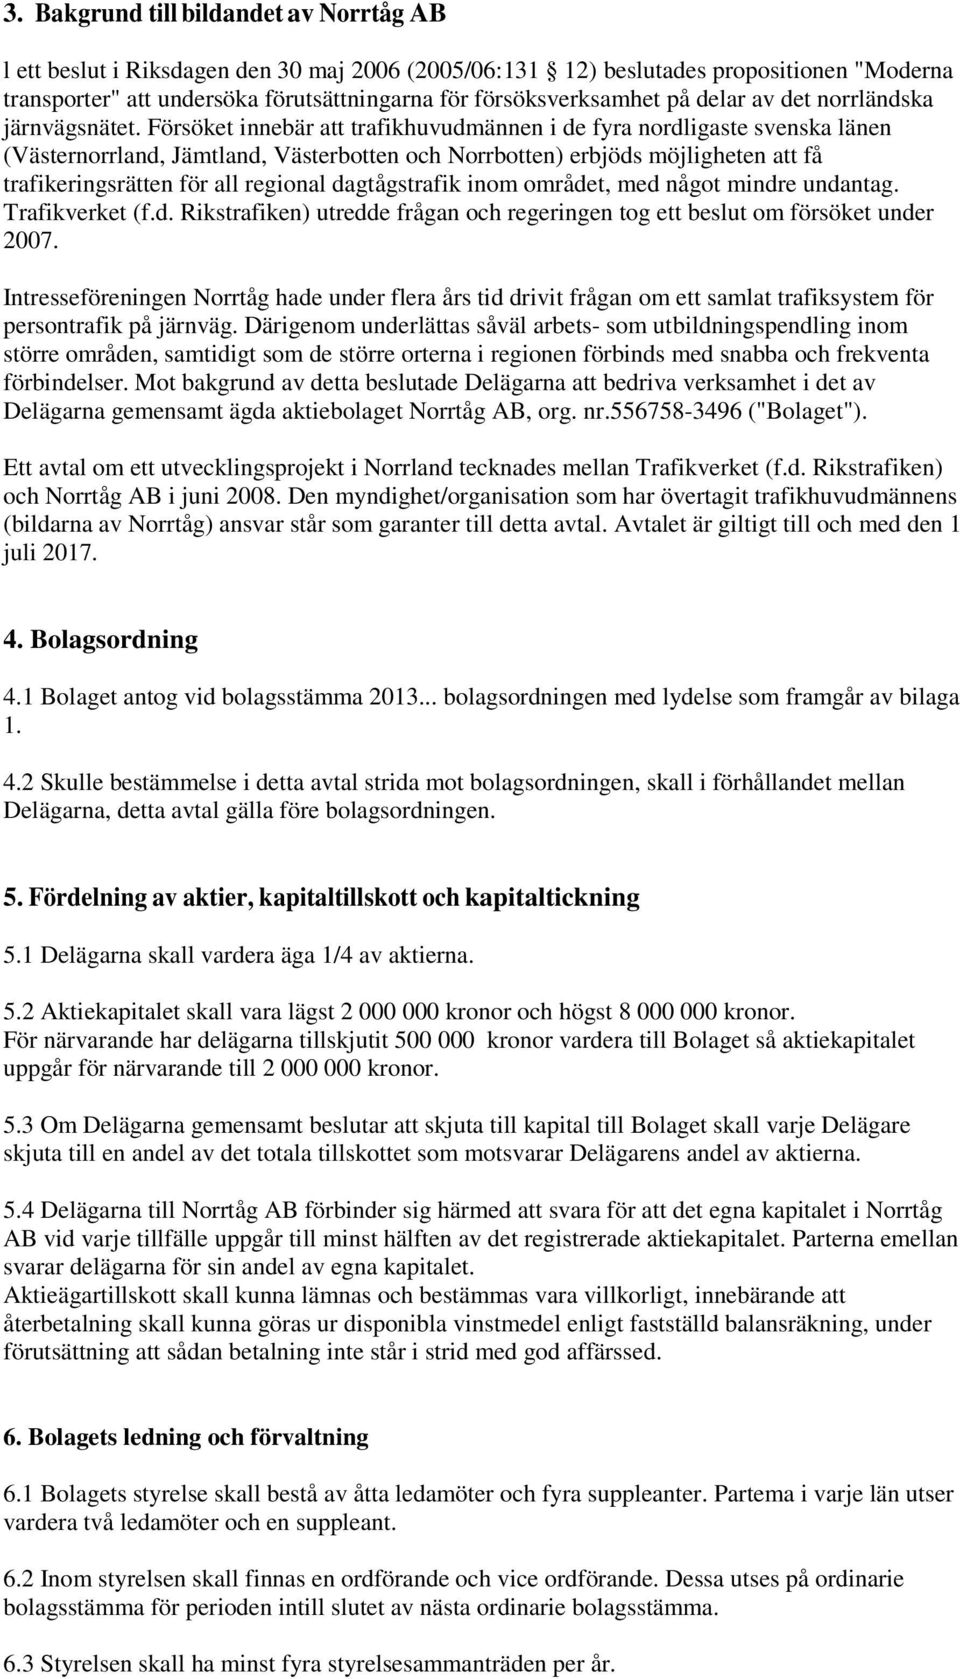 Försöket innebär att trafikhuvudmännen i de fyra nordligaste svenska länen (Västernorrland, Jämtland, Västerbotten och Norrbotten) erbjöds möjligheten att få trafikeringsrätten för all regional